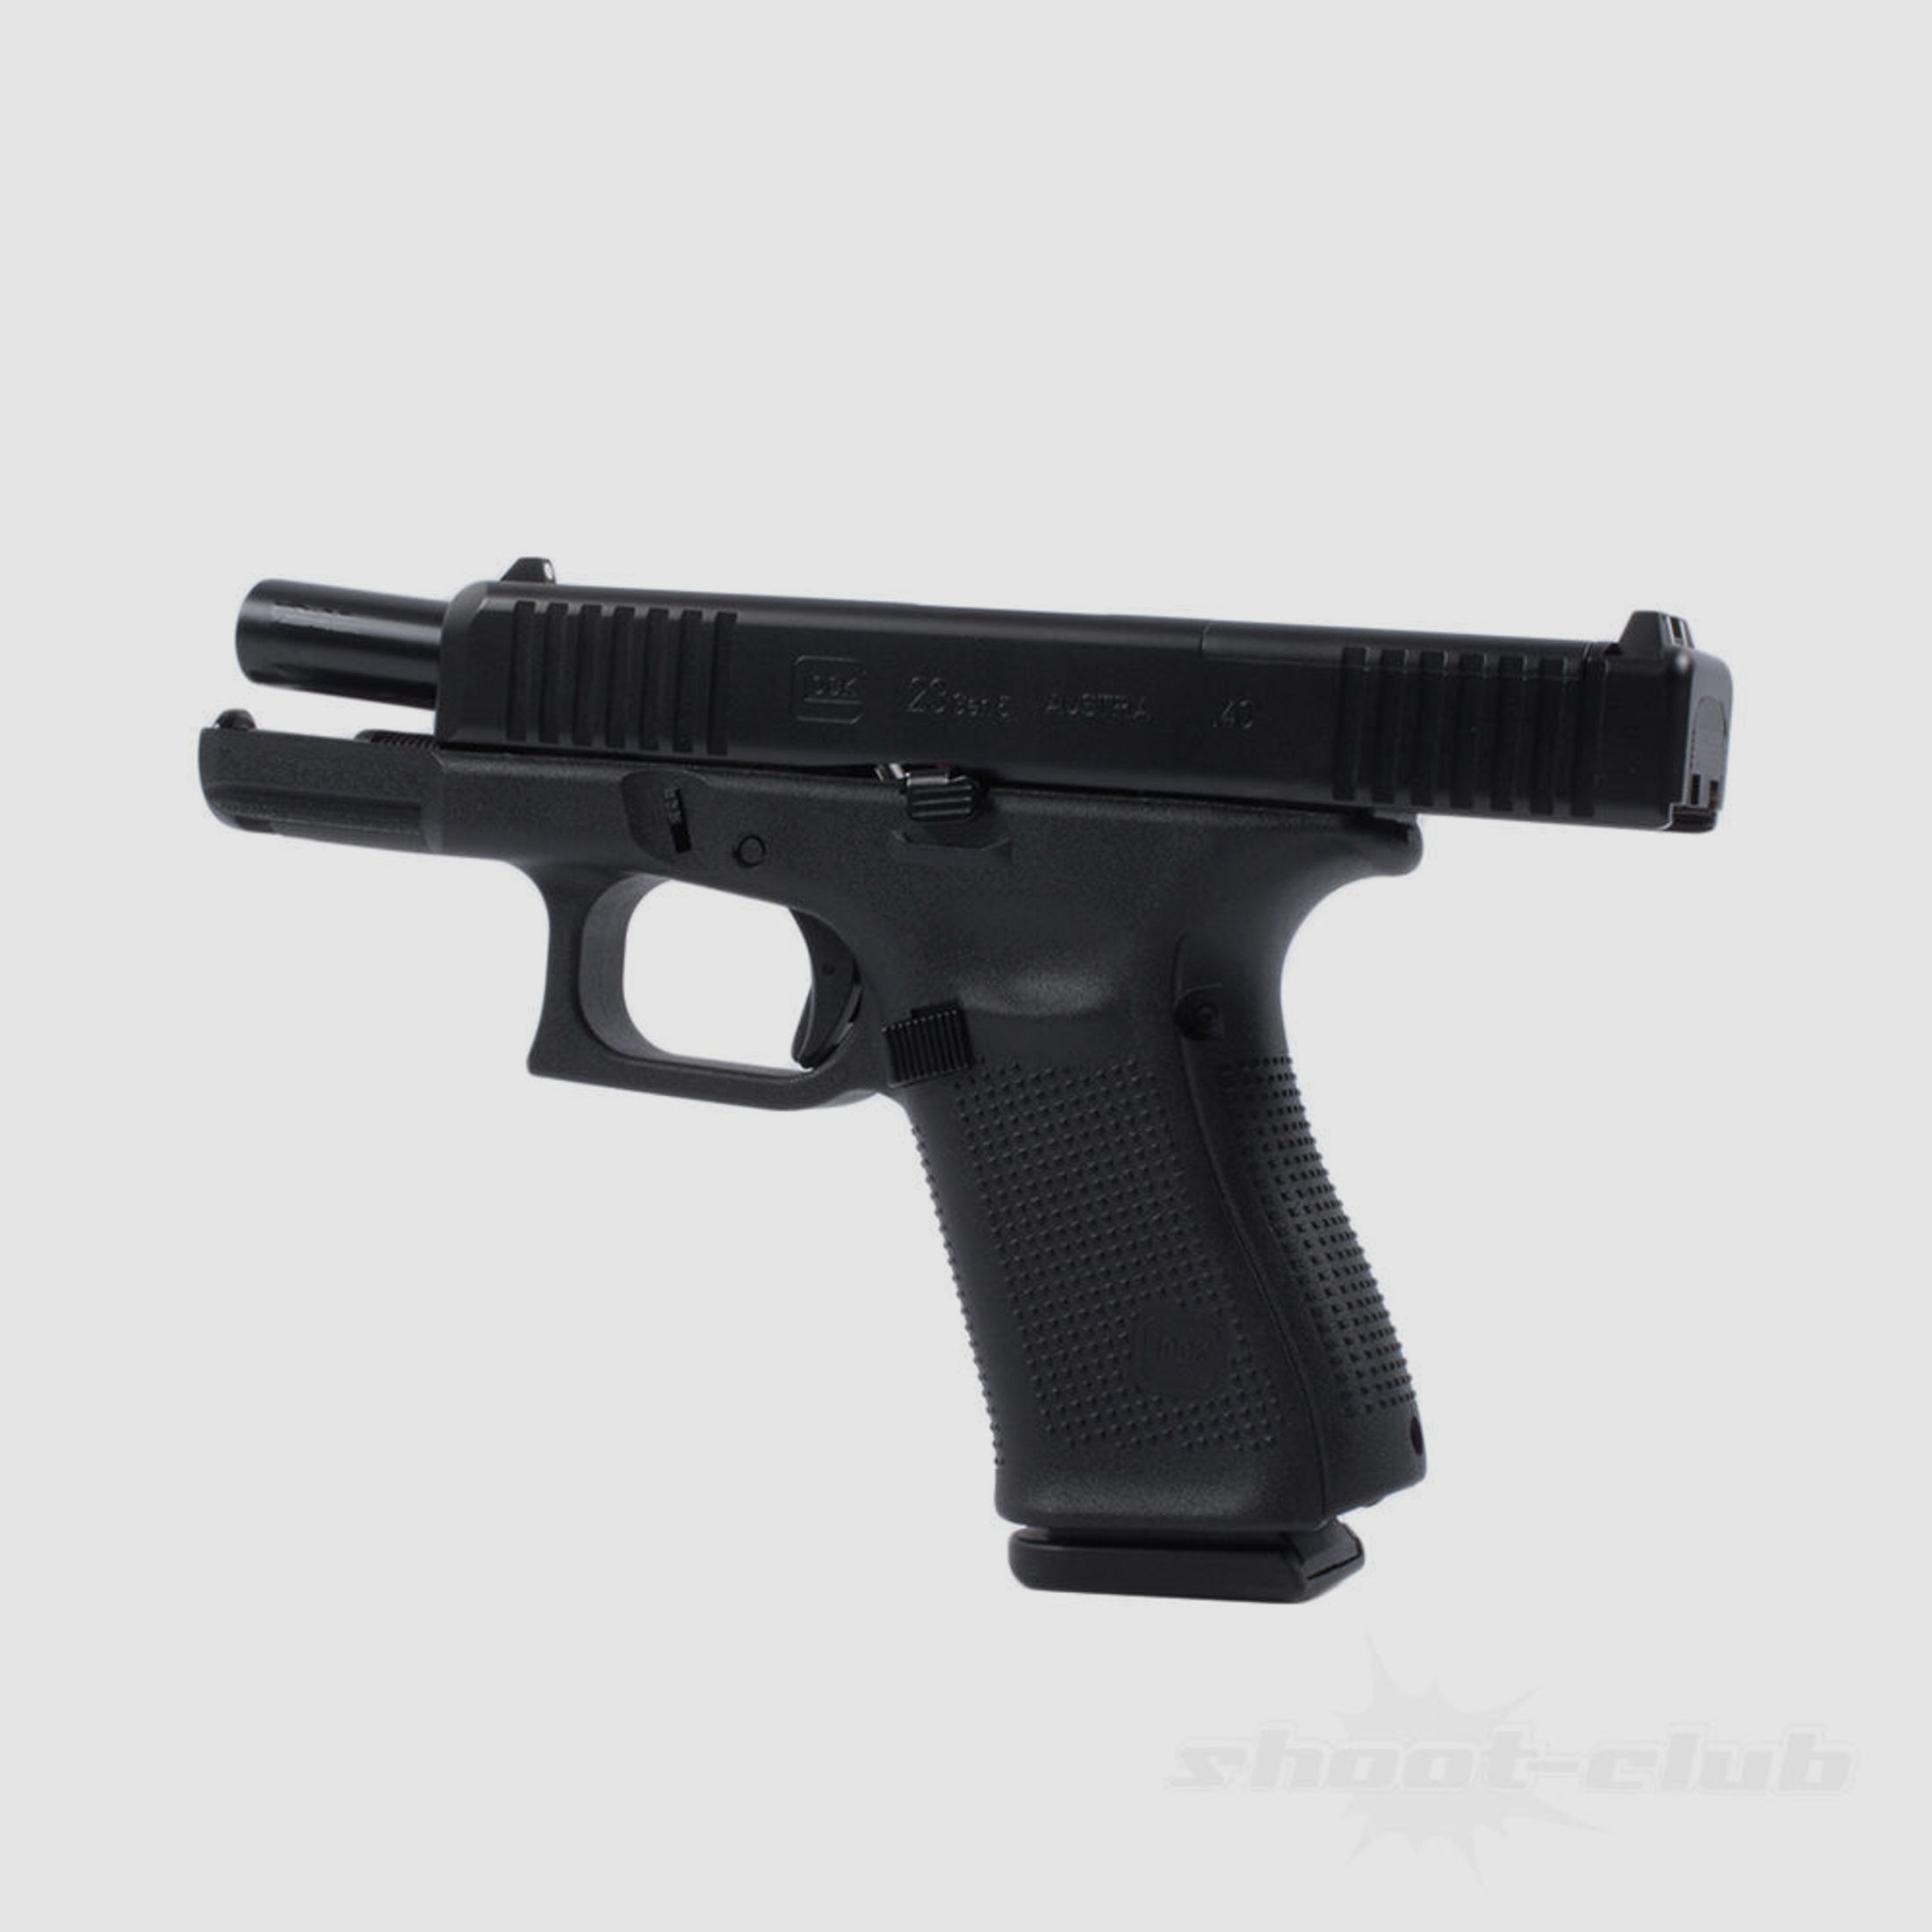 Glock 23 Pistole Gen 5 FS MOS, .40 S&W - halbautomatische Pistole